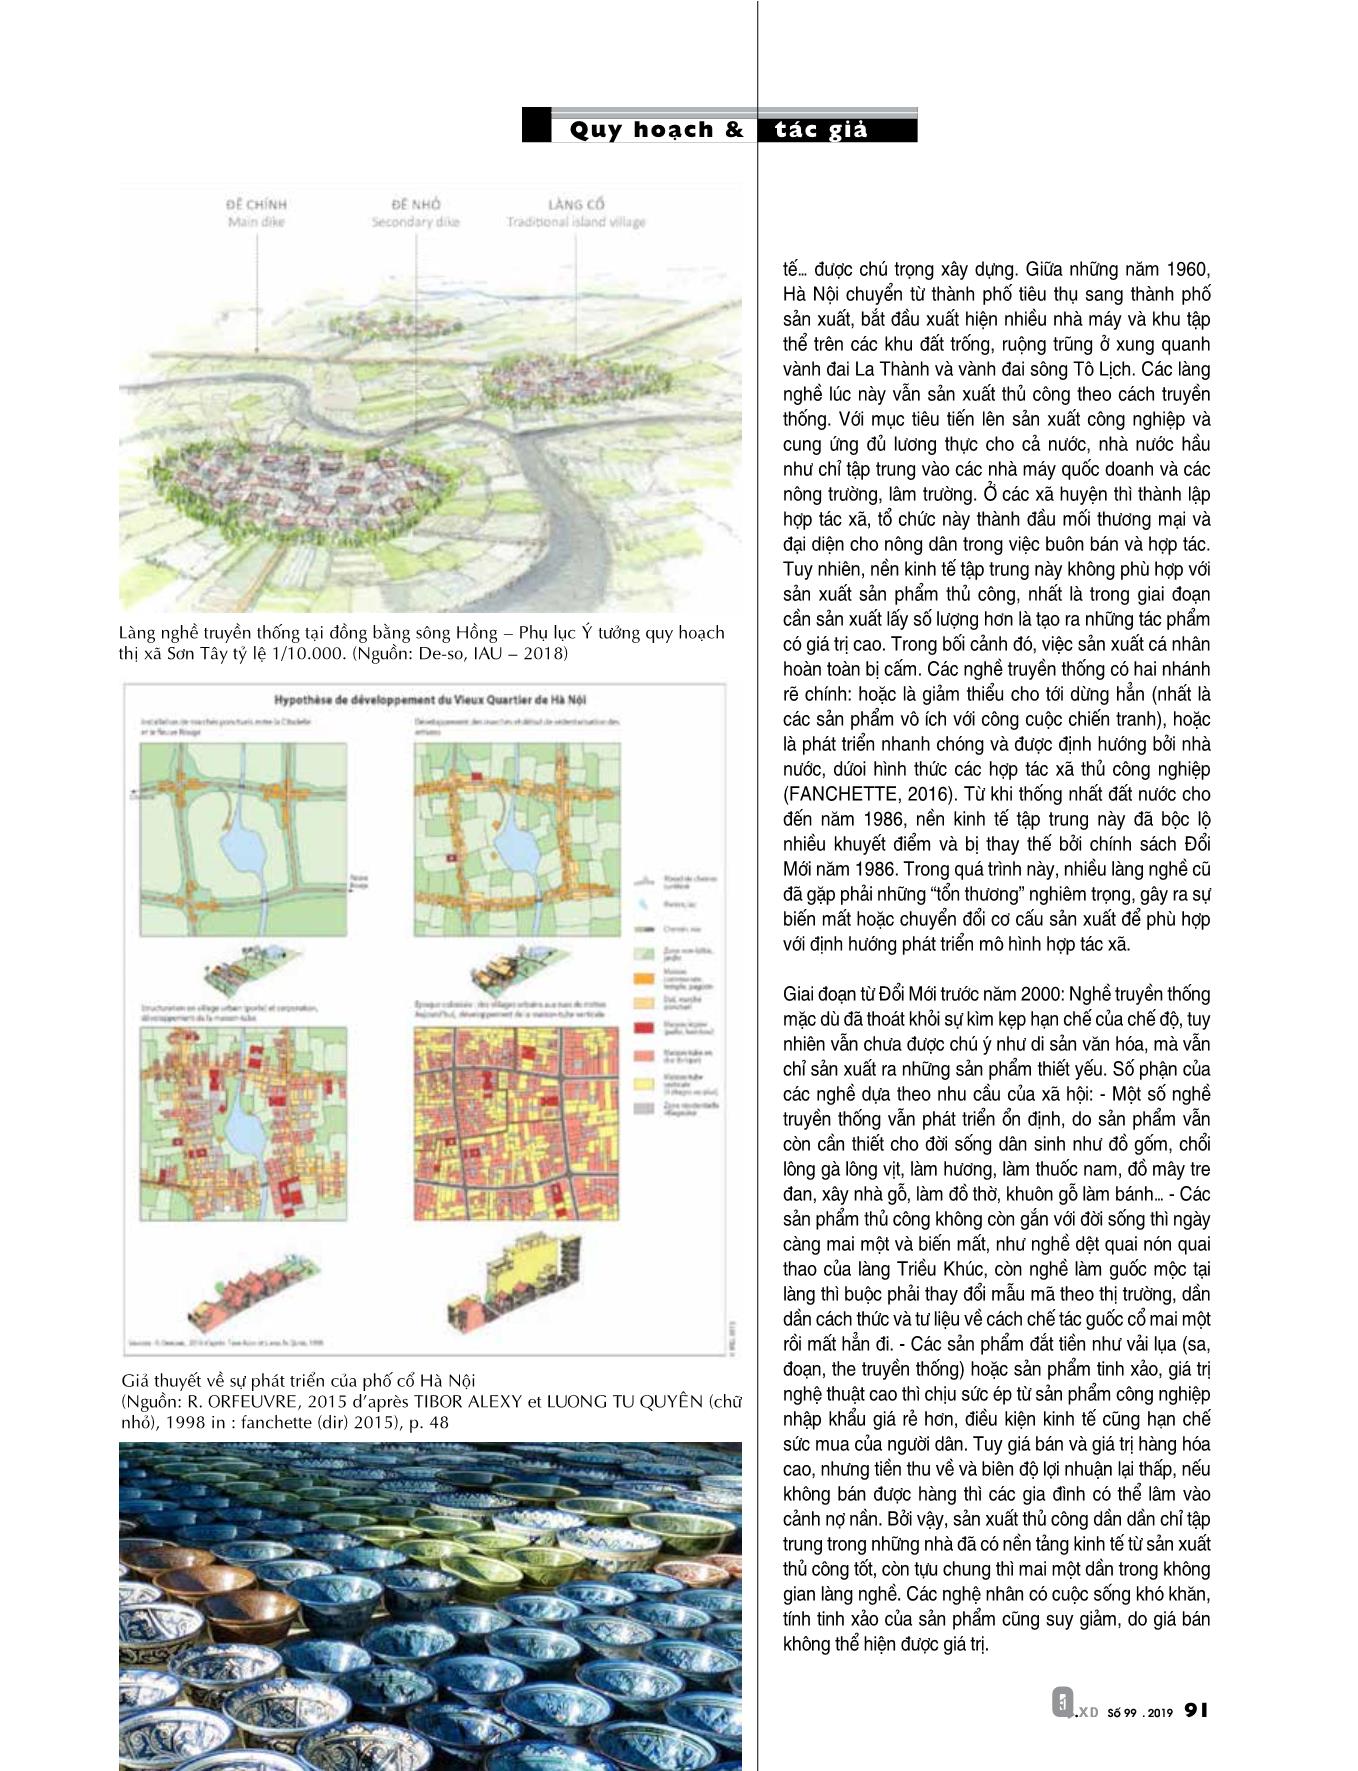 Vai trò của làng nghề thủ công truyền thống trong định hướng phát triển Hà Nội năm 2030, tầm nhìn 2050 trang 2